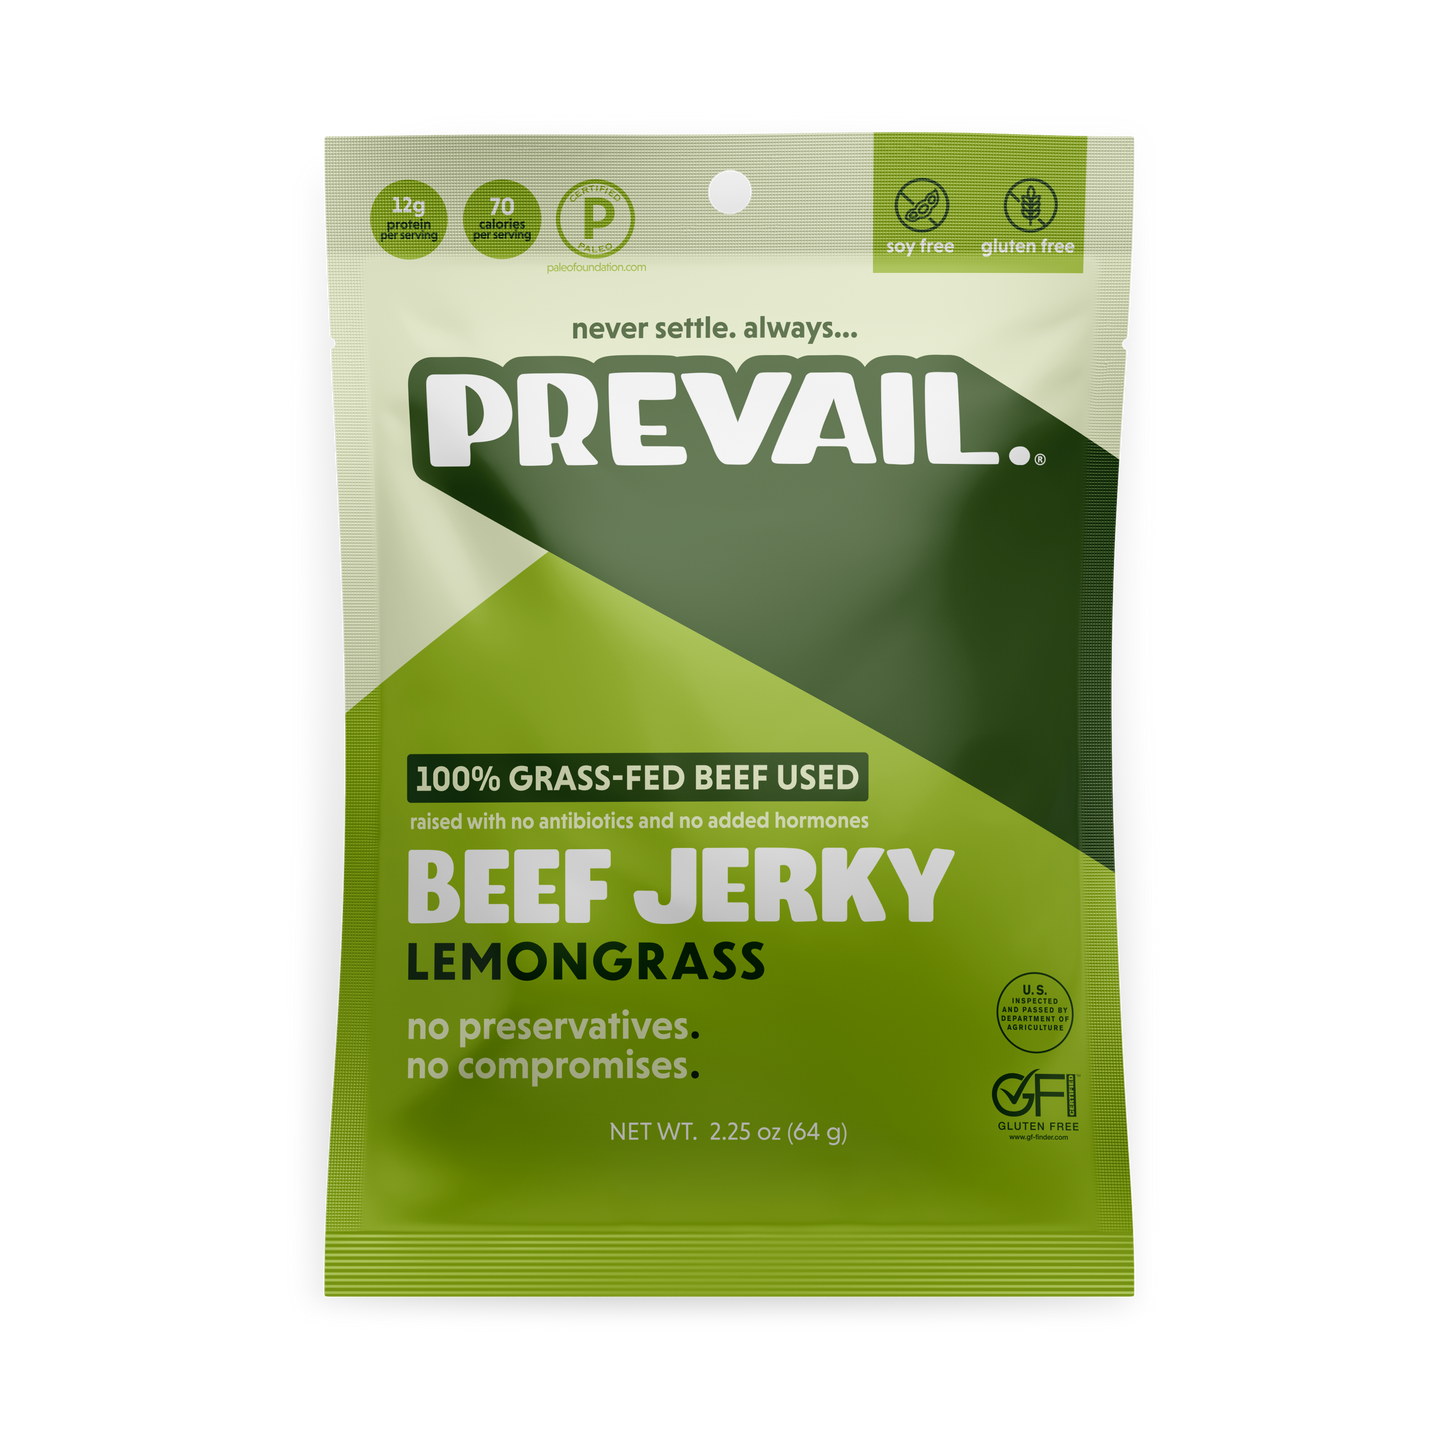 Lemongrass Beef Jerky 3 Pck by PREVAIL Jerky